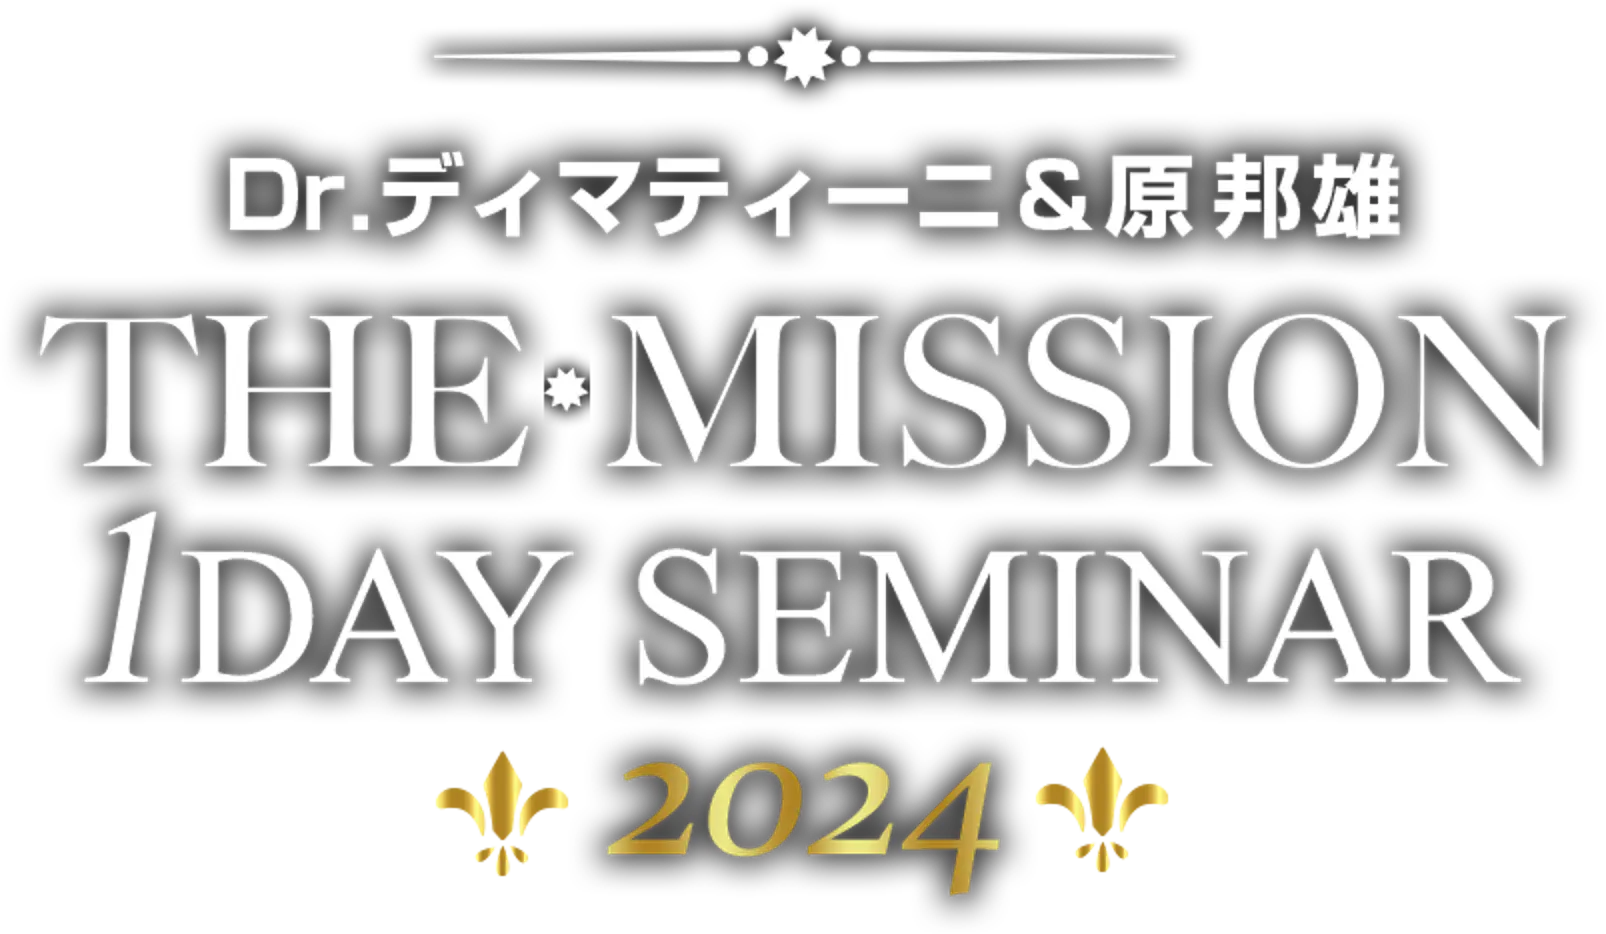 Dr.ディマティーニ&原邦雄 THE MISSION 1DAY SEMINAR 2024